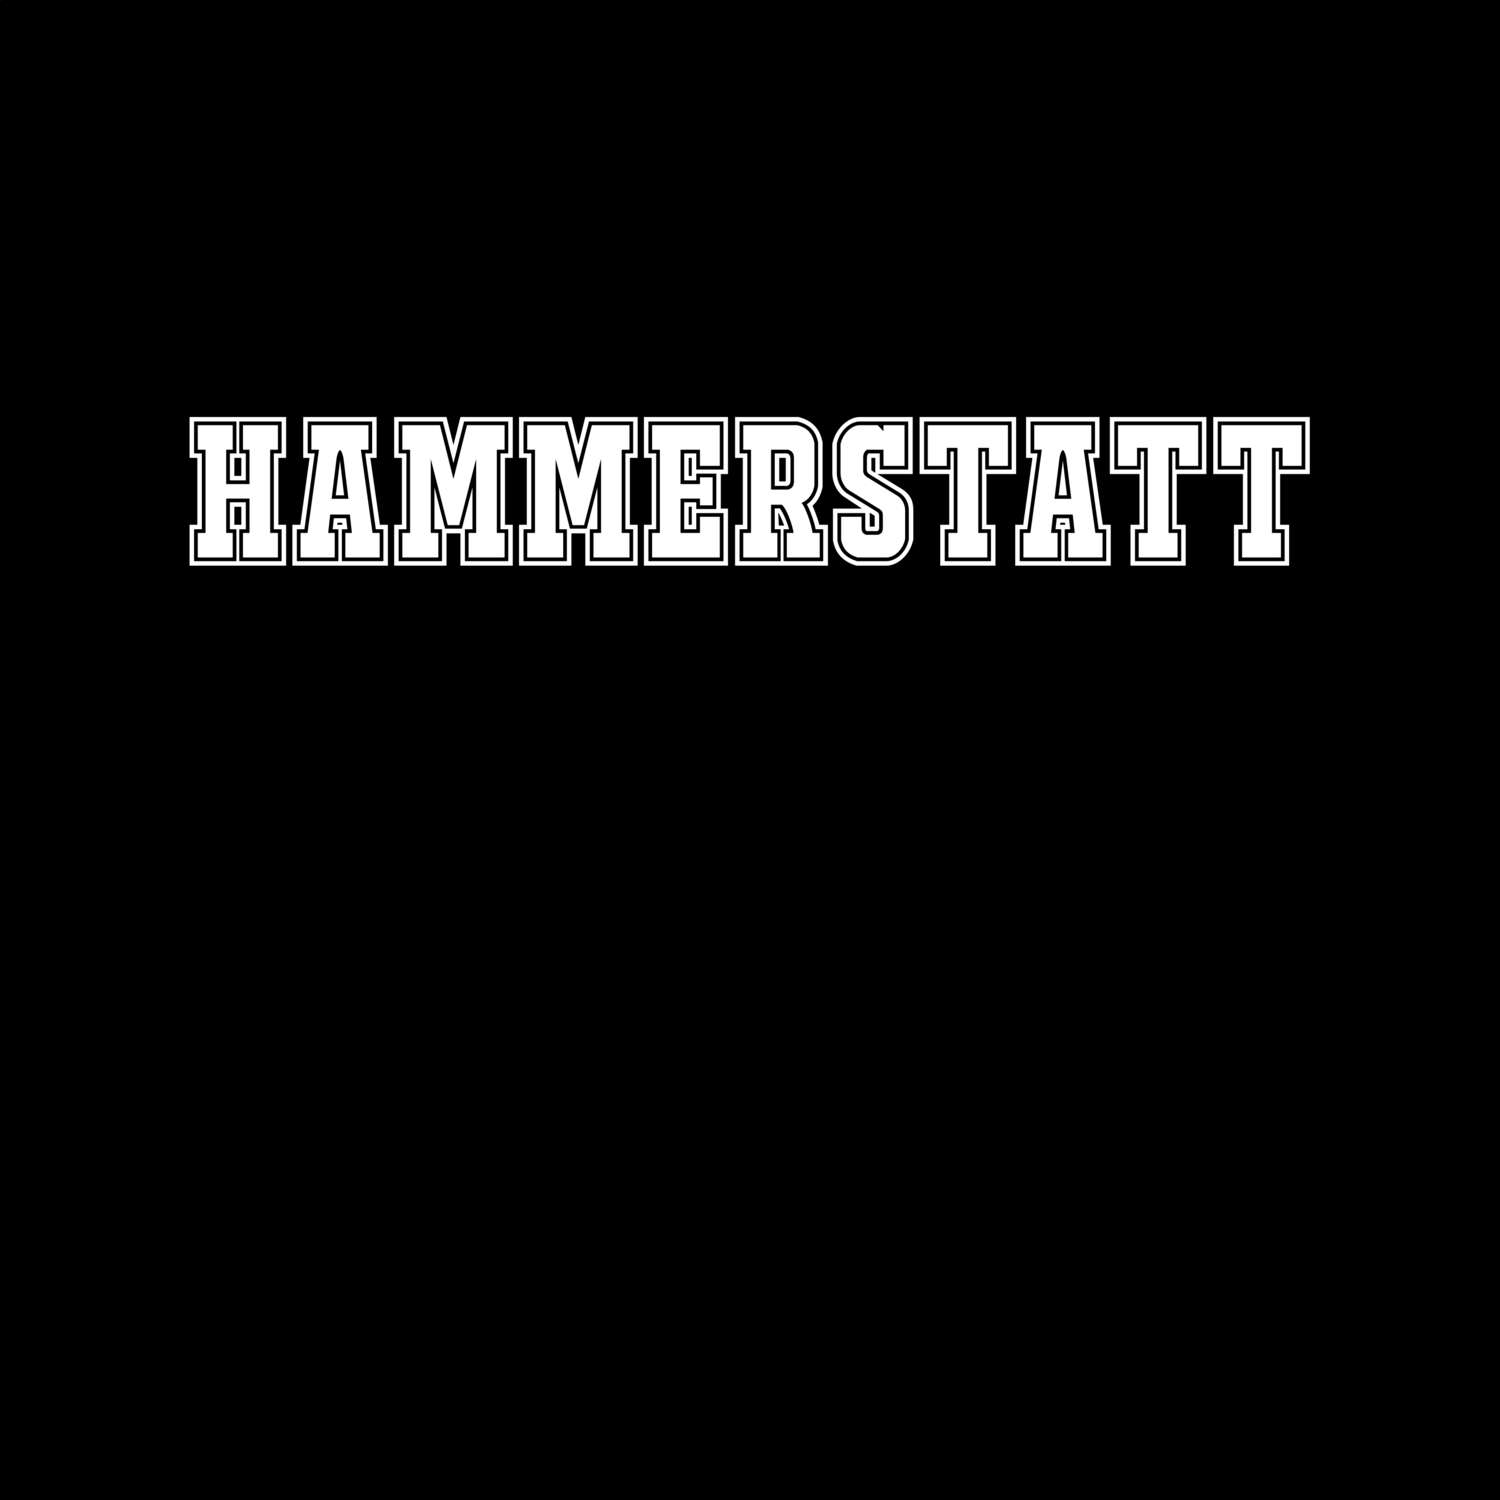 Hammerstatt T-Shirt »Classic«